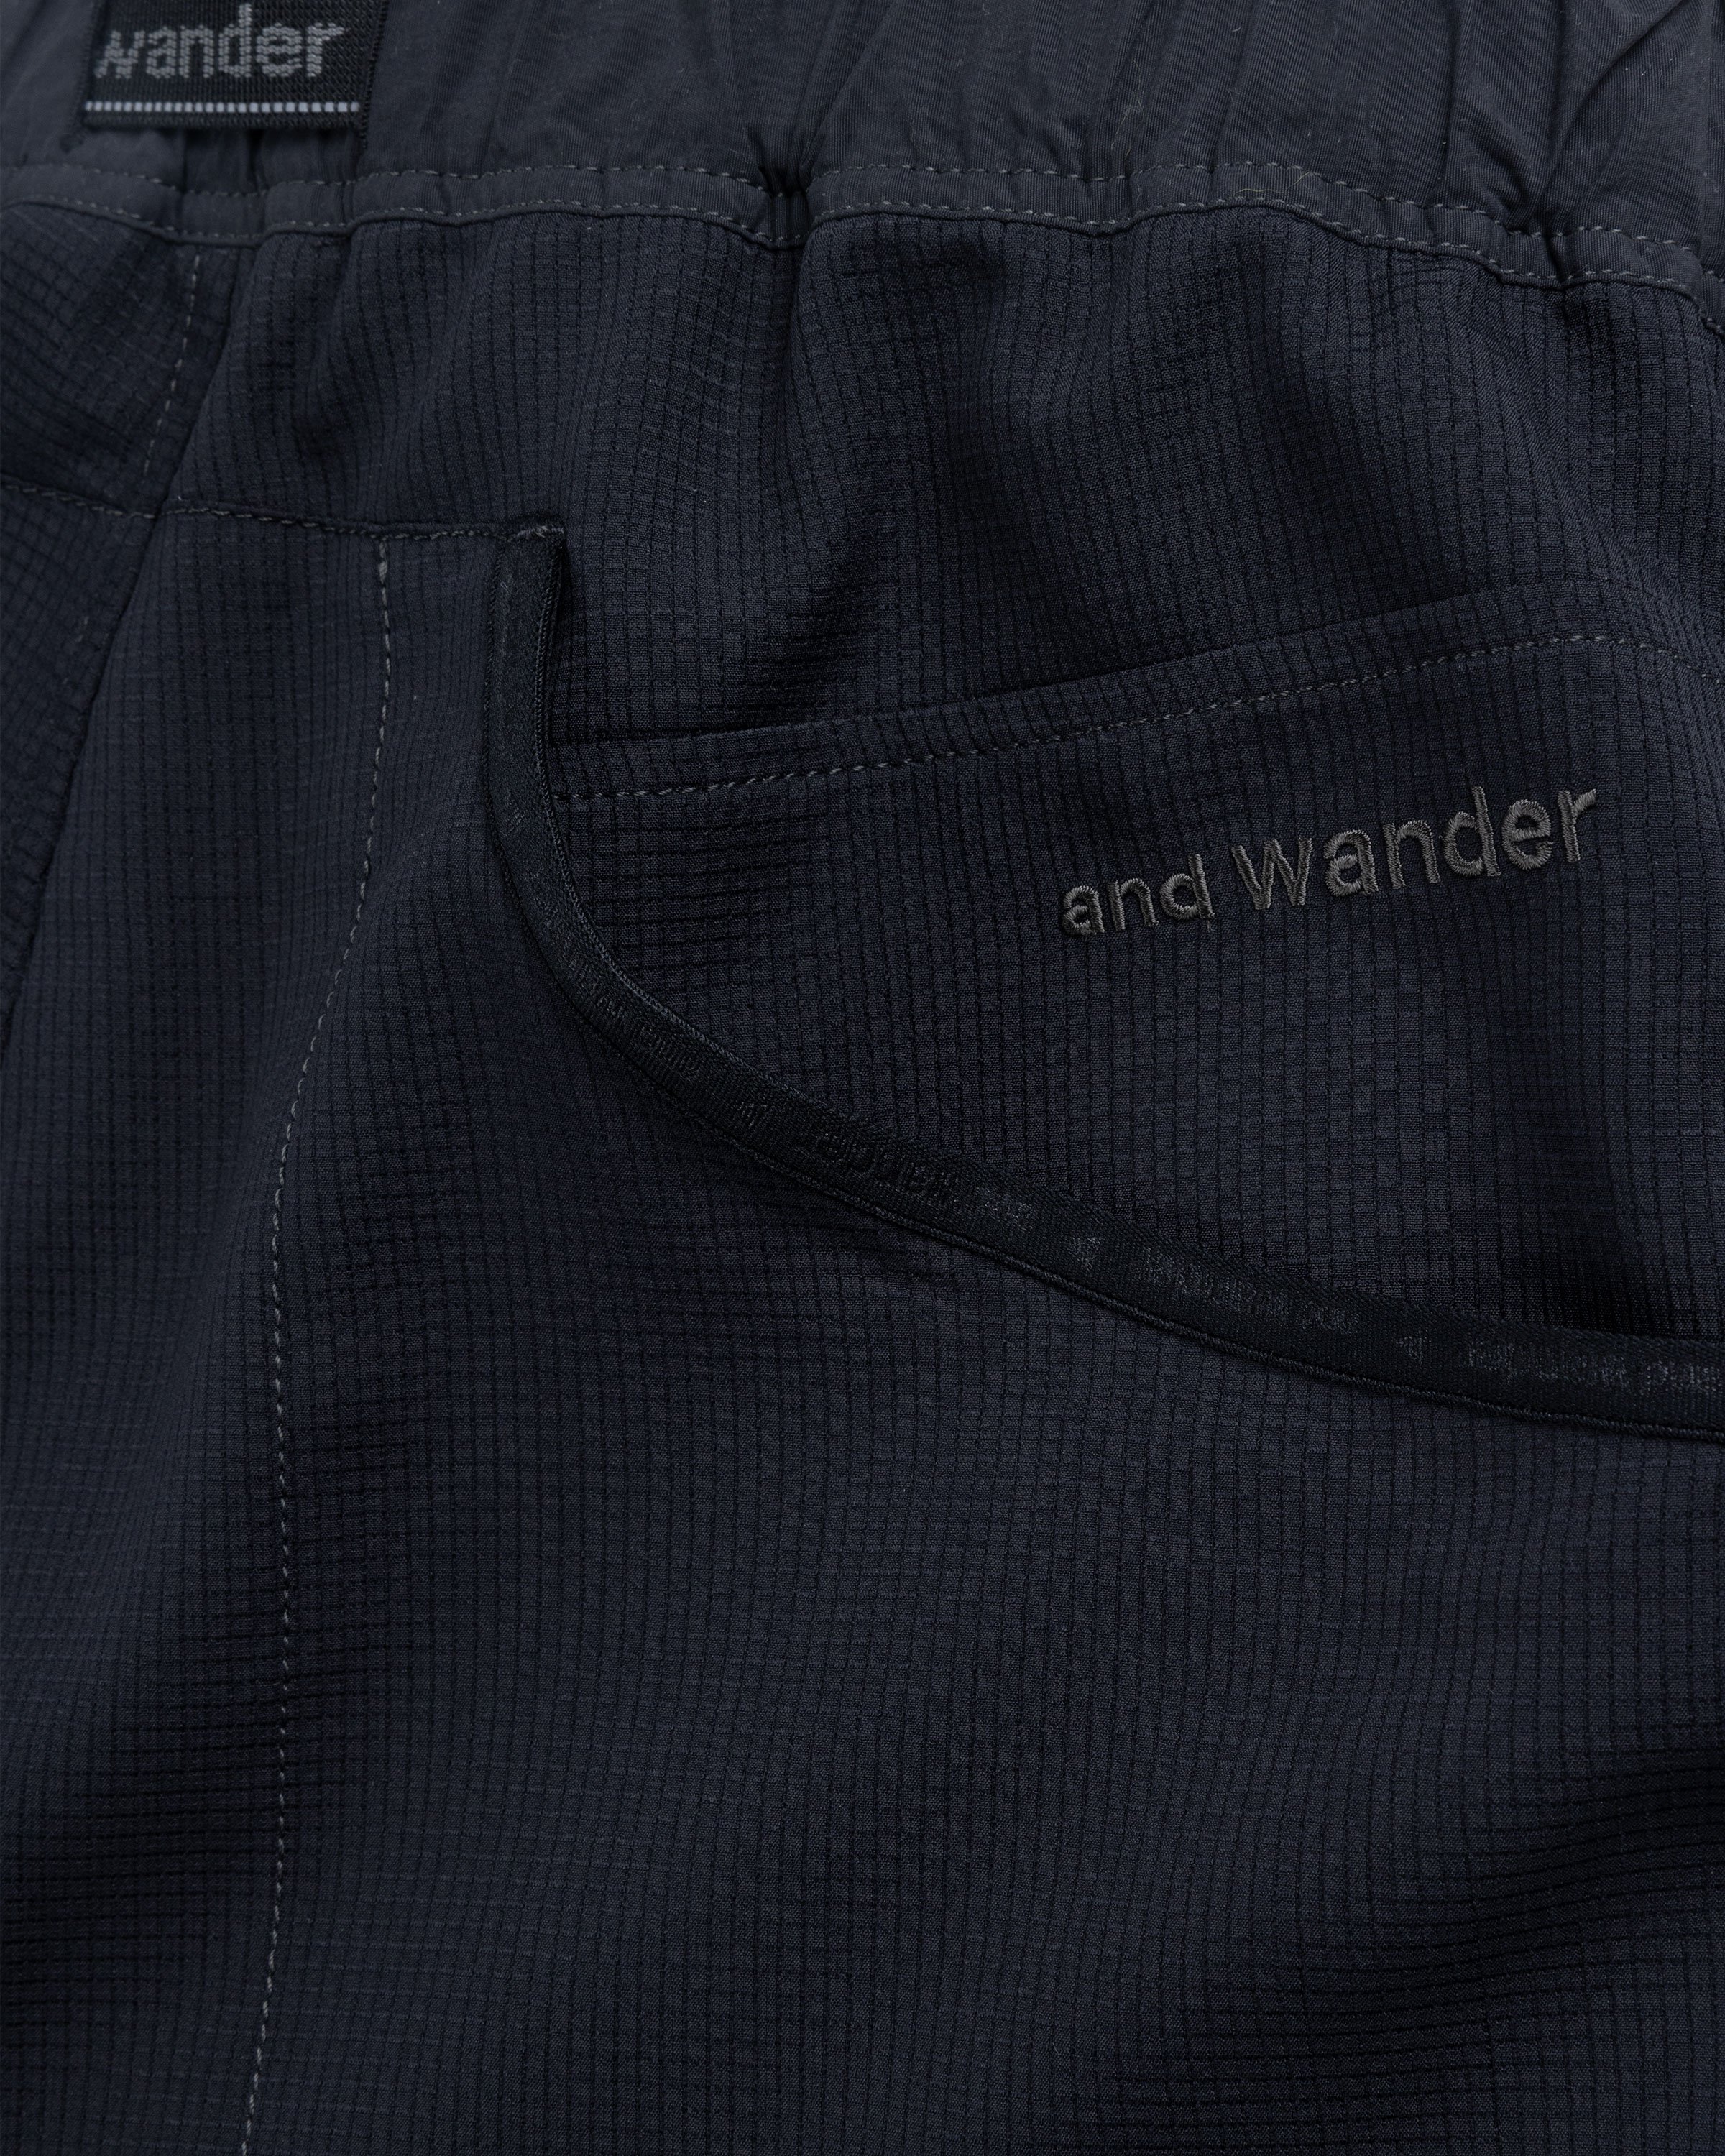 And Wander - 9 0 v e n t p a n t s - Clothing - Black - Image 7